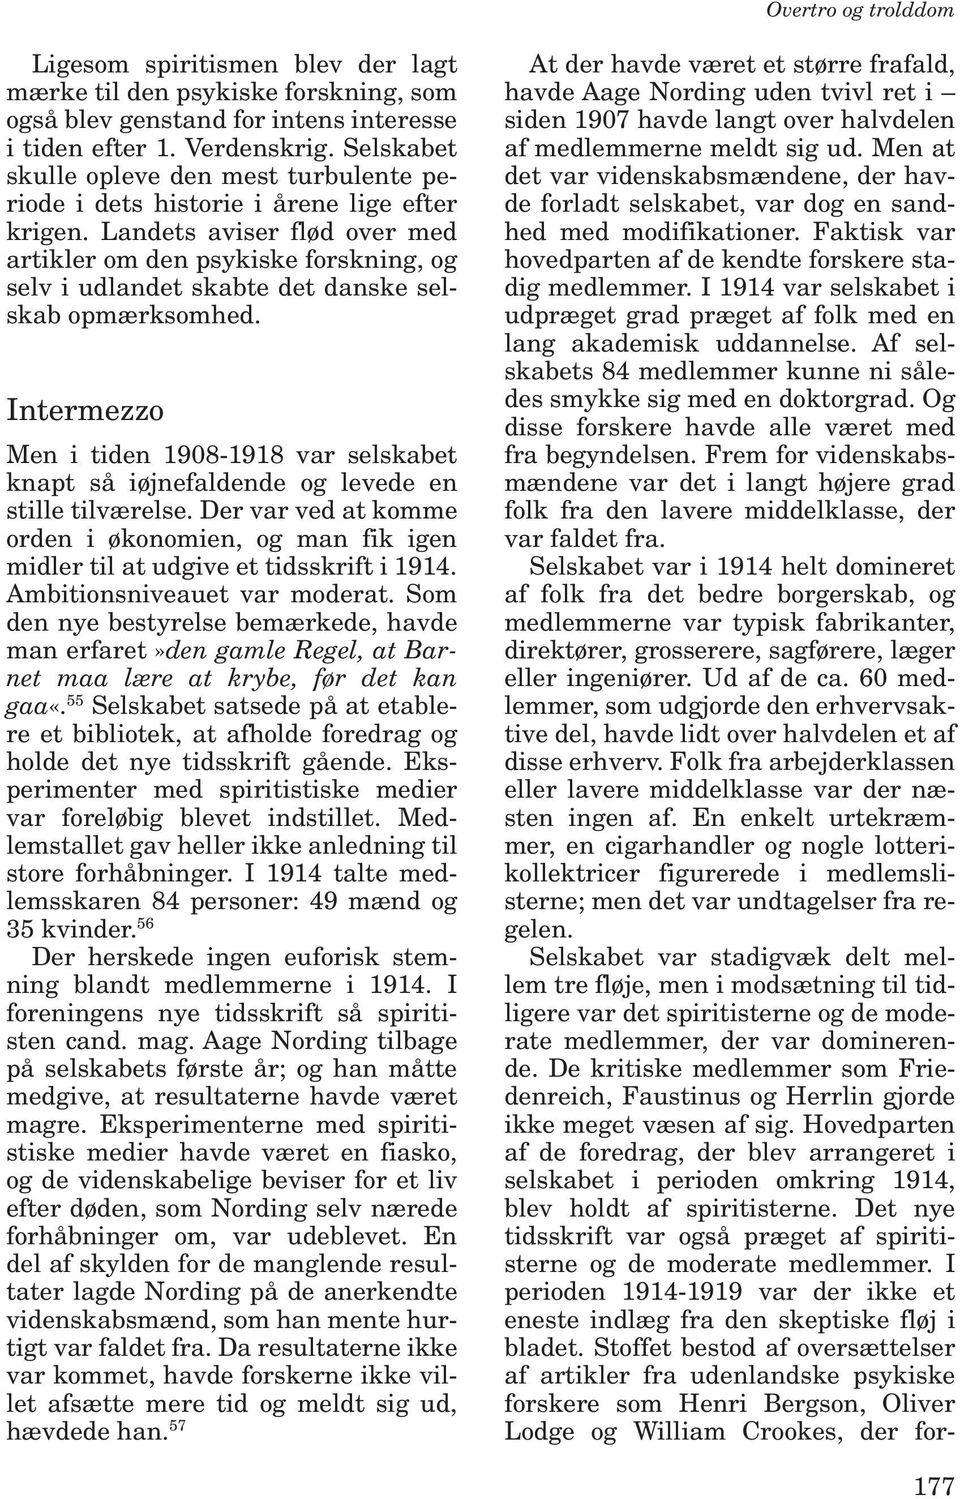 Landets aviser flød over med artikler om den psykiske forskning, og selv i udlandet skabte det danske selskab opmærksomhed.